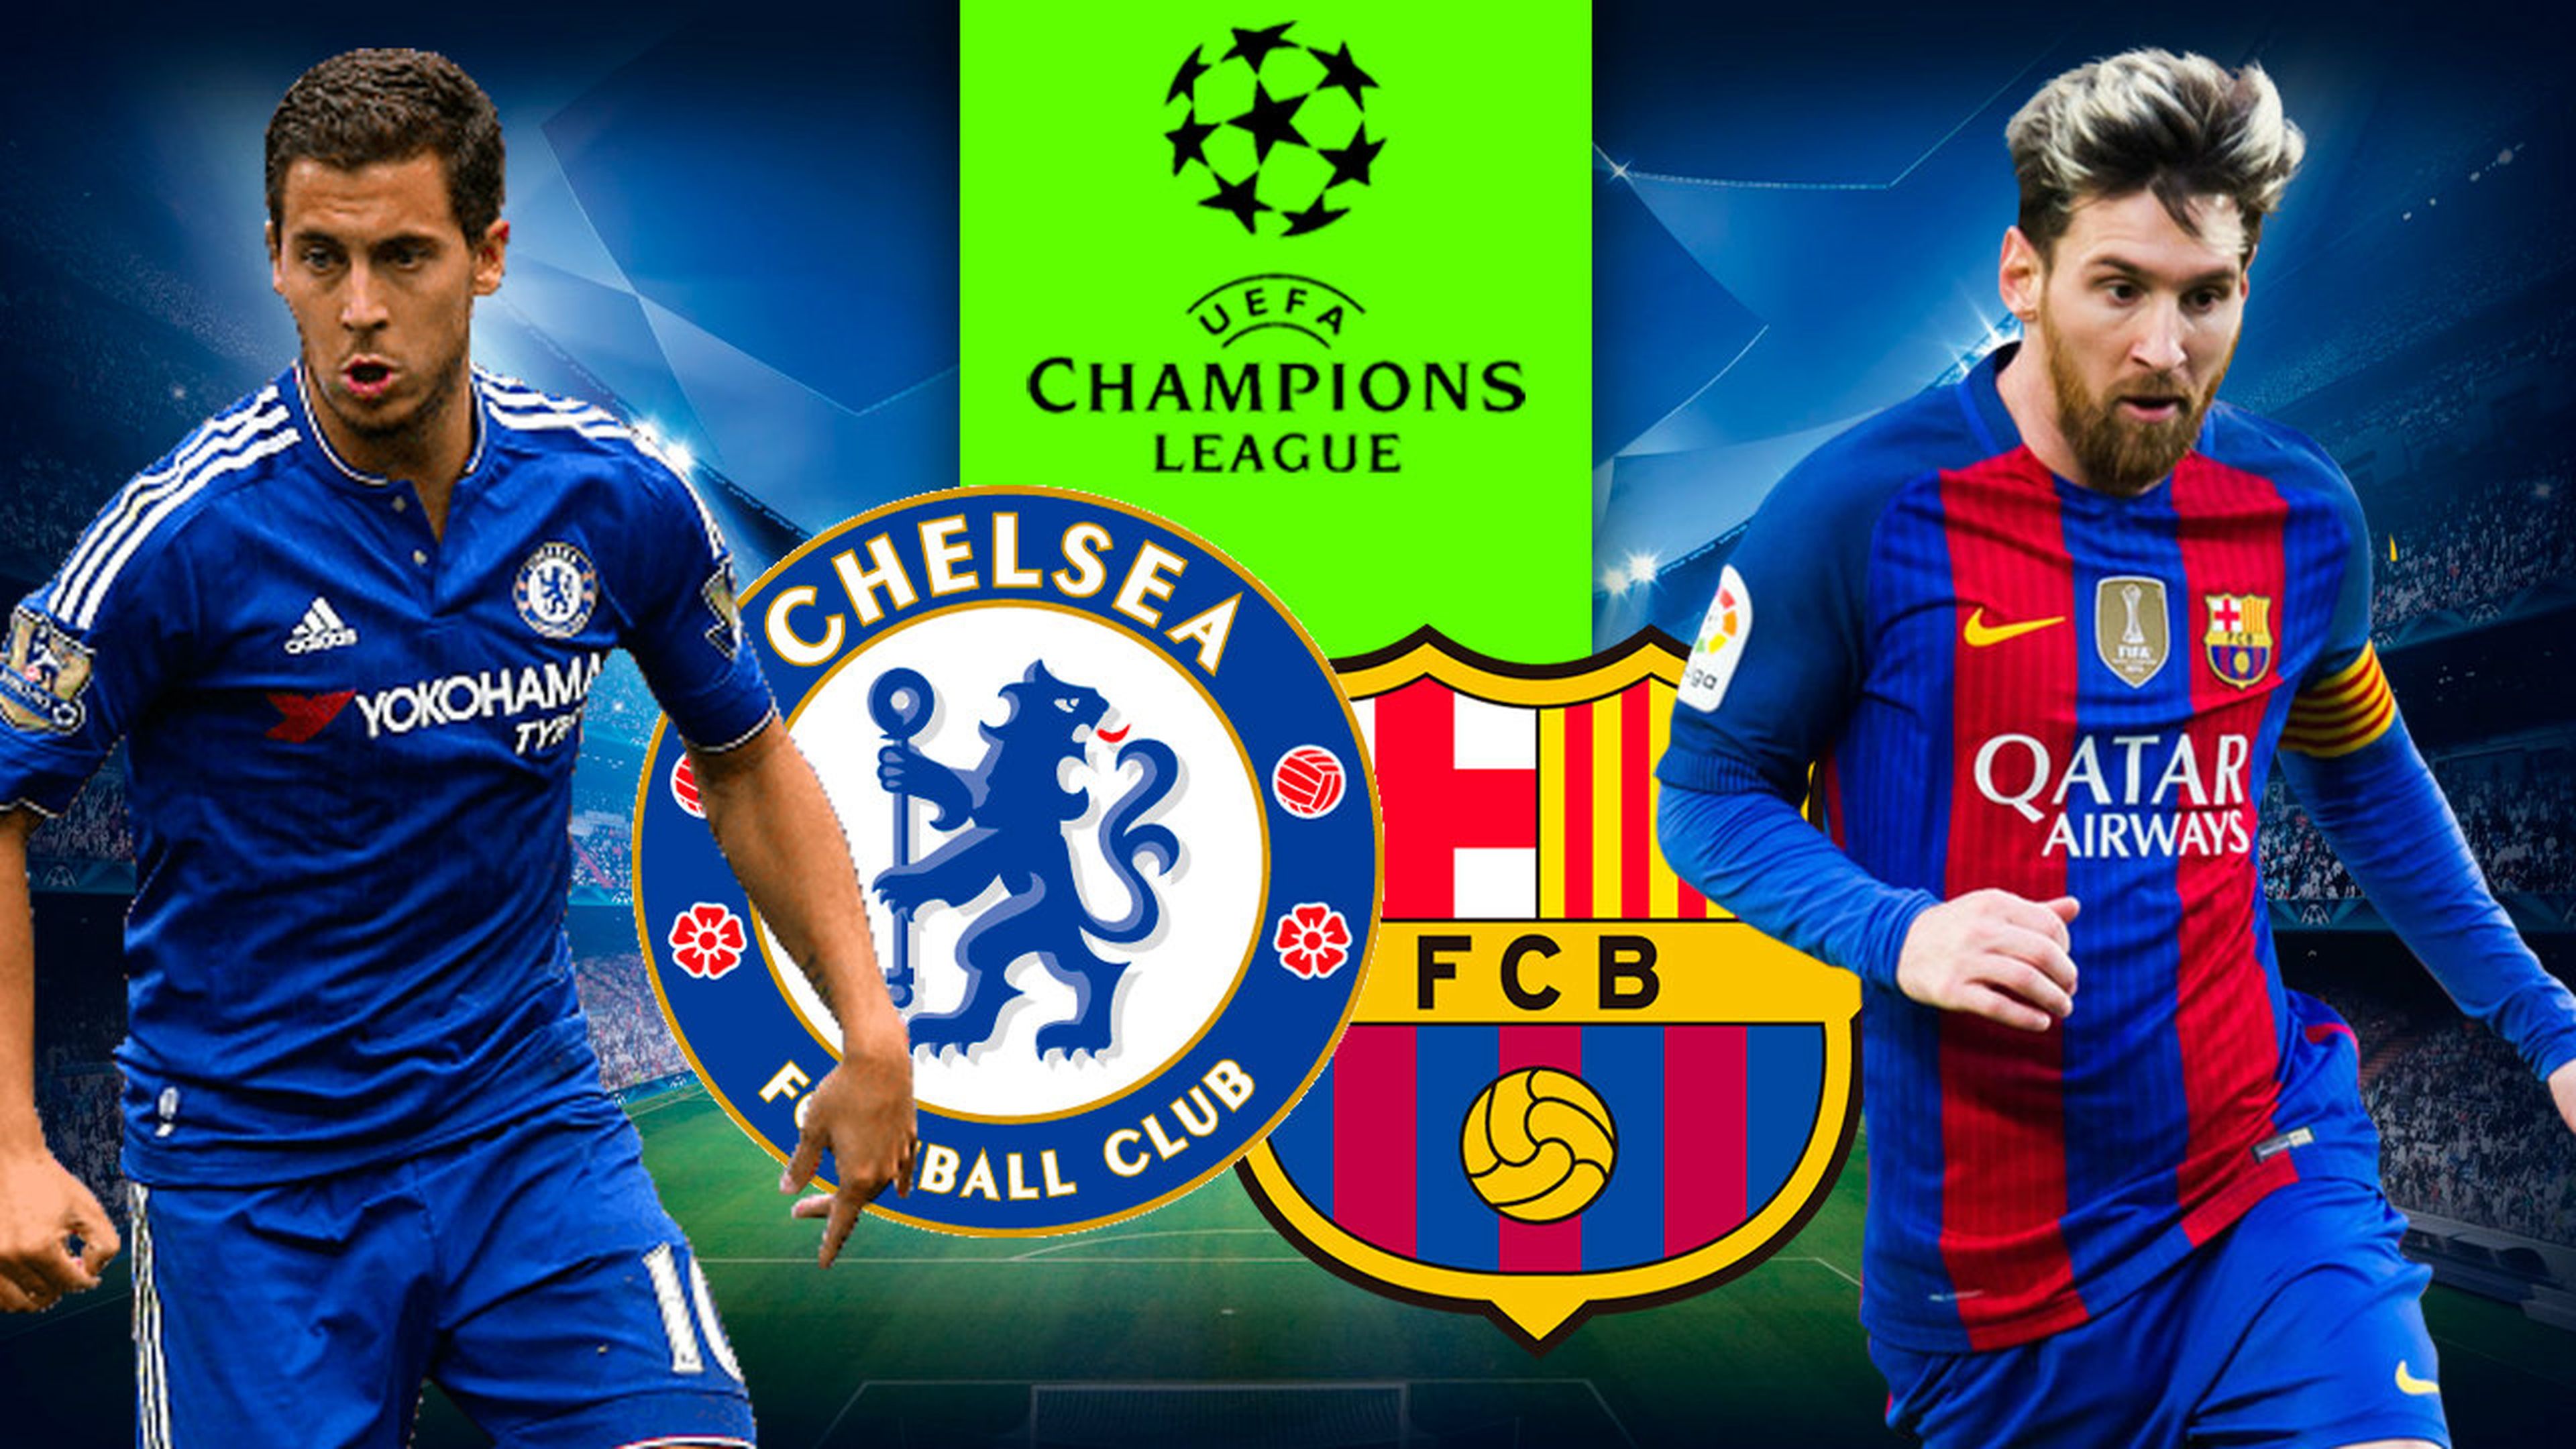 Chelsea vs Barcelona Champions League 2018